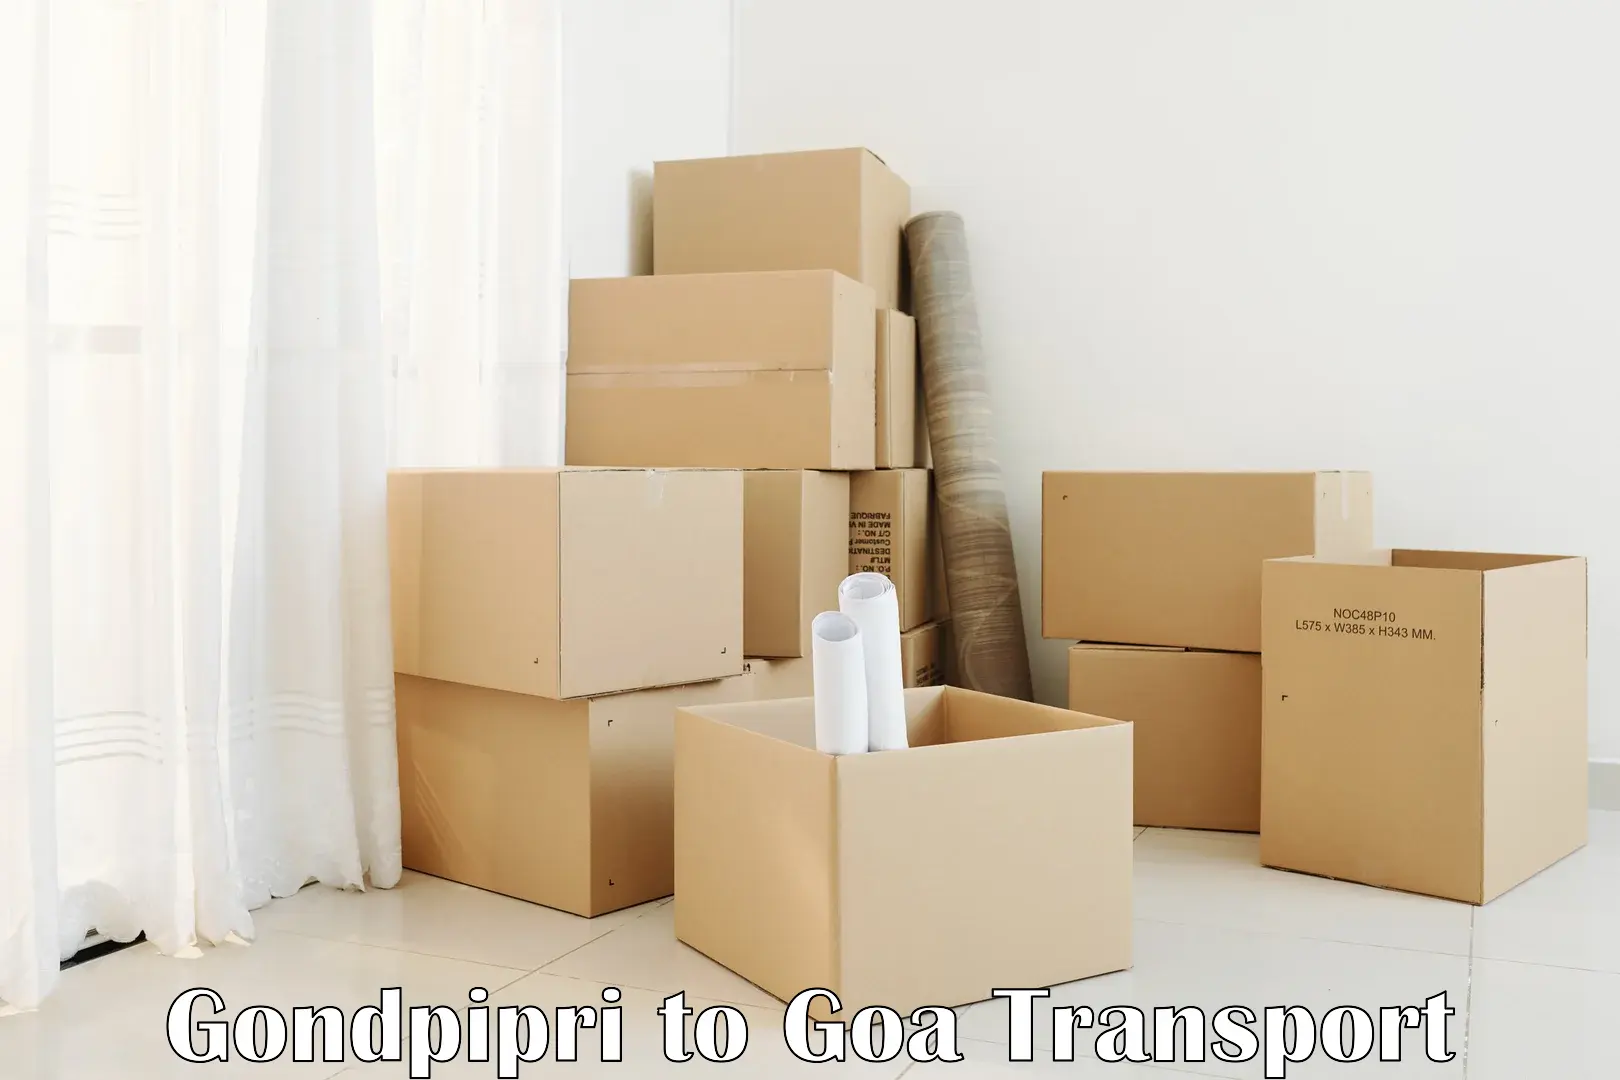 Transport shared services Gondpipri to Vasco da Gama